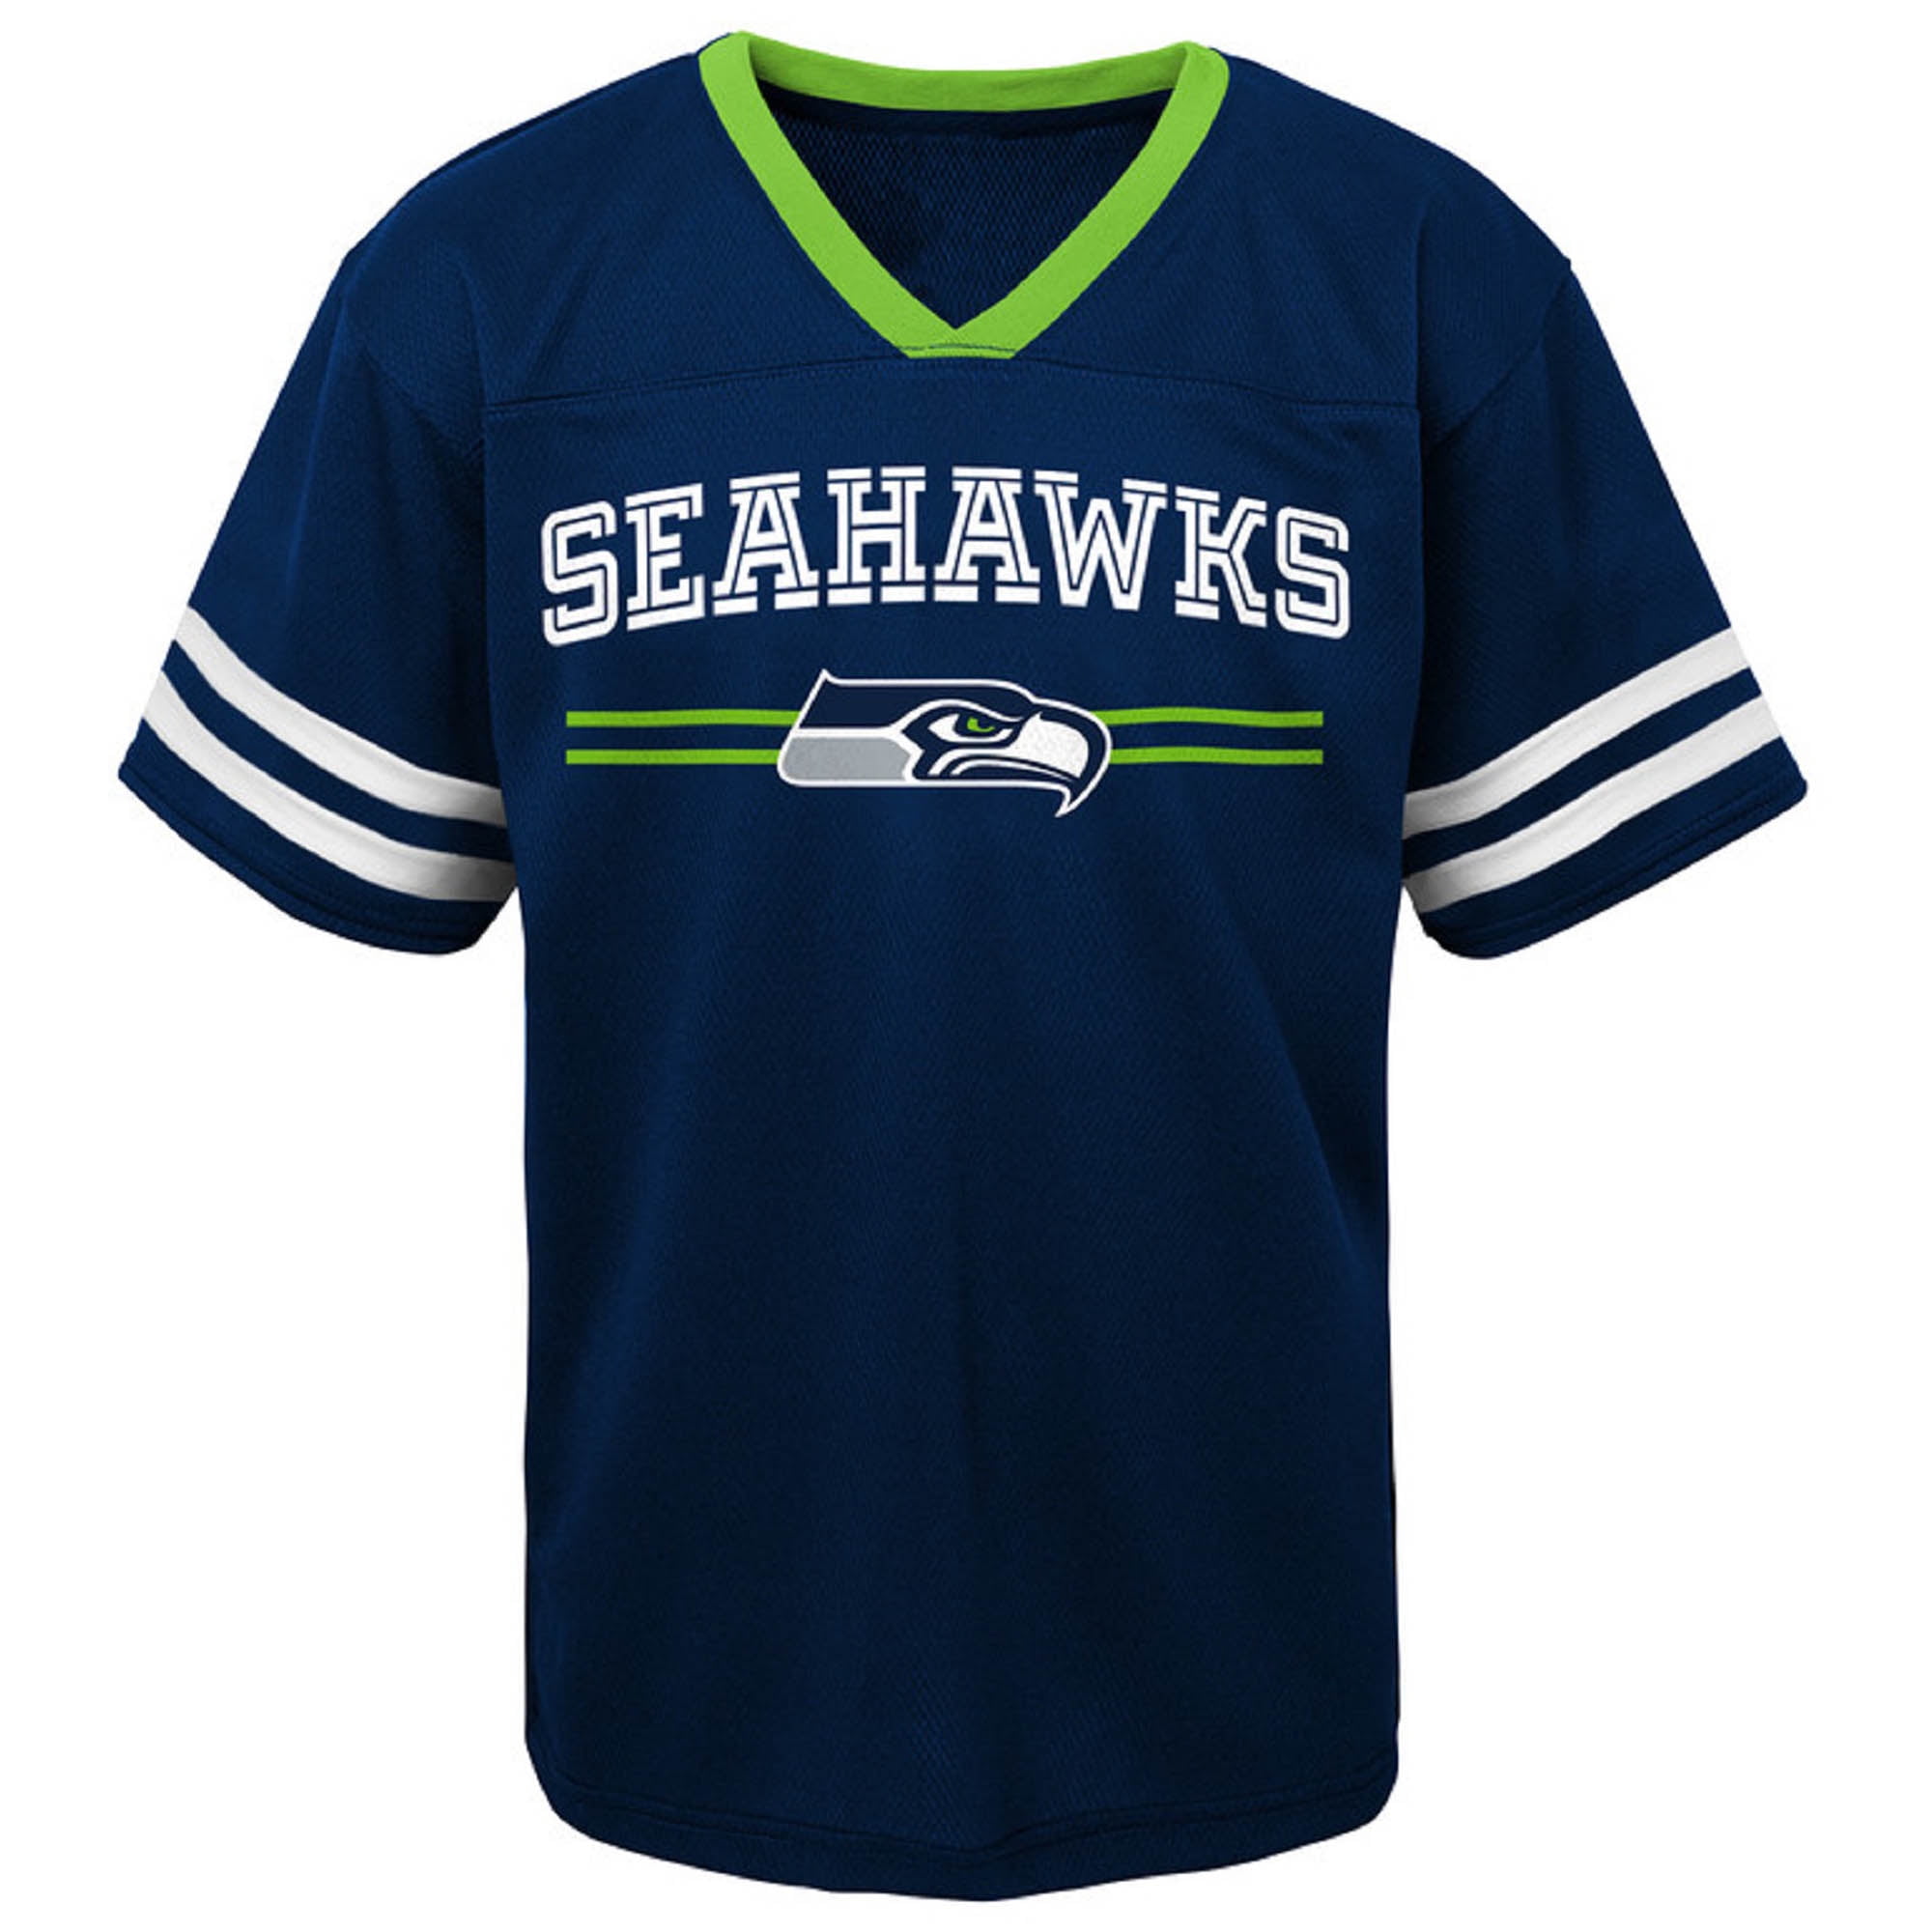 seahawks mesh jersey